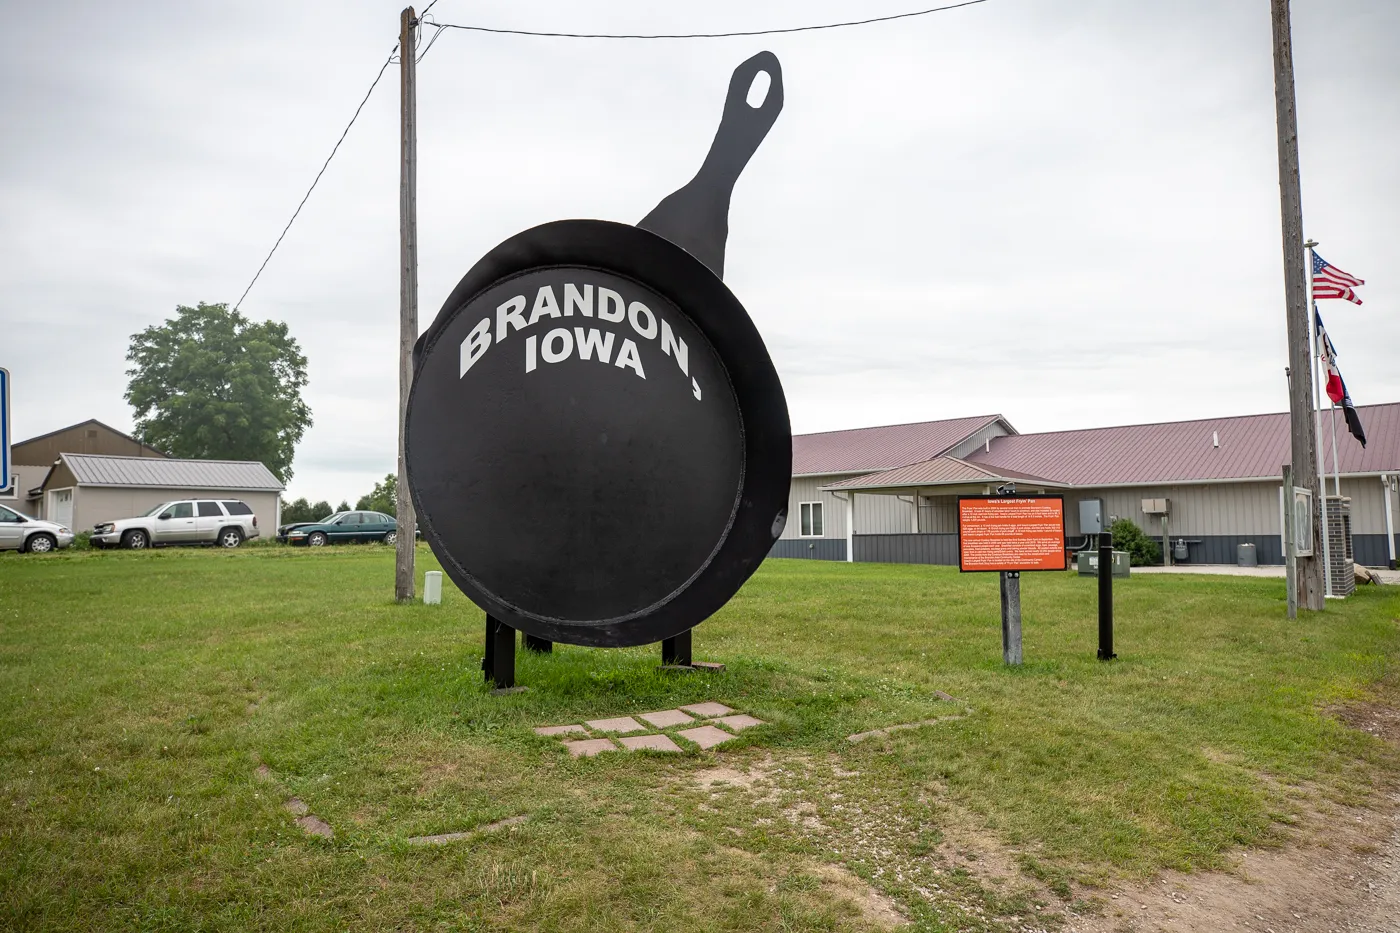 Iowa's Largest Frying Pan in Brandon, Iowa - Roadside Attraction for an Iowa Road Trip